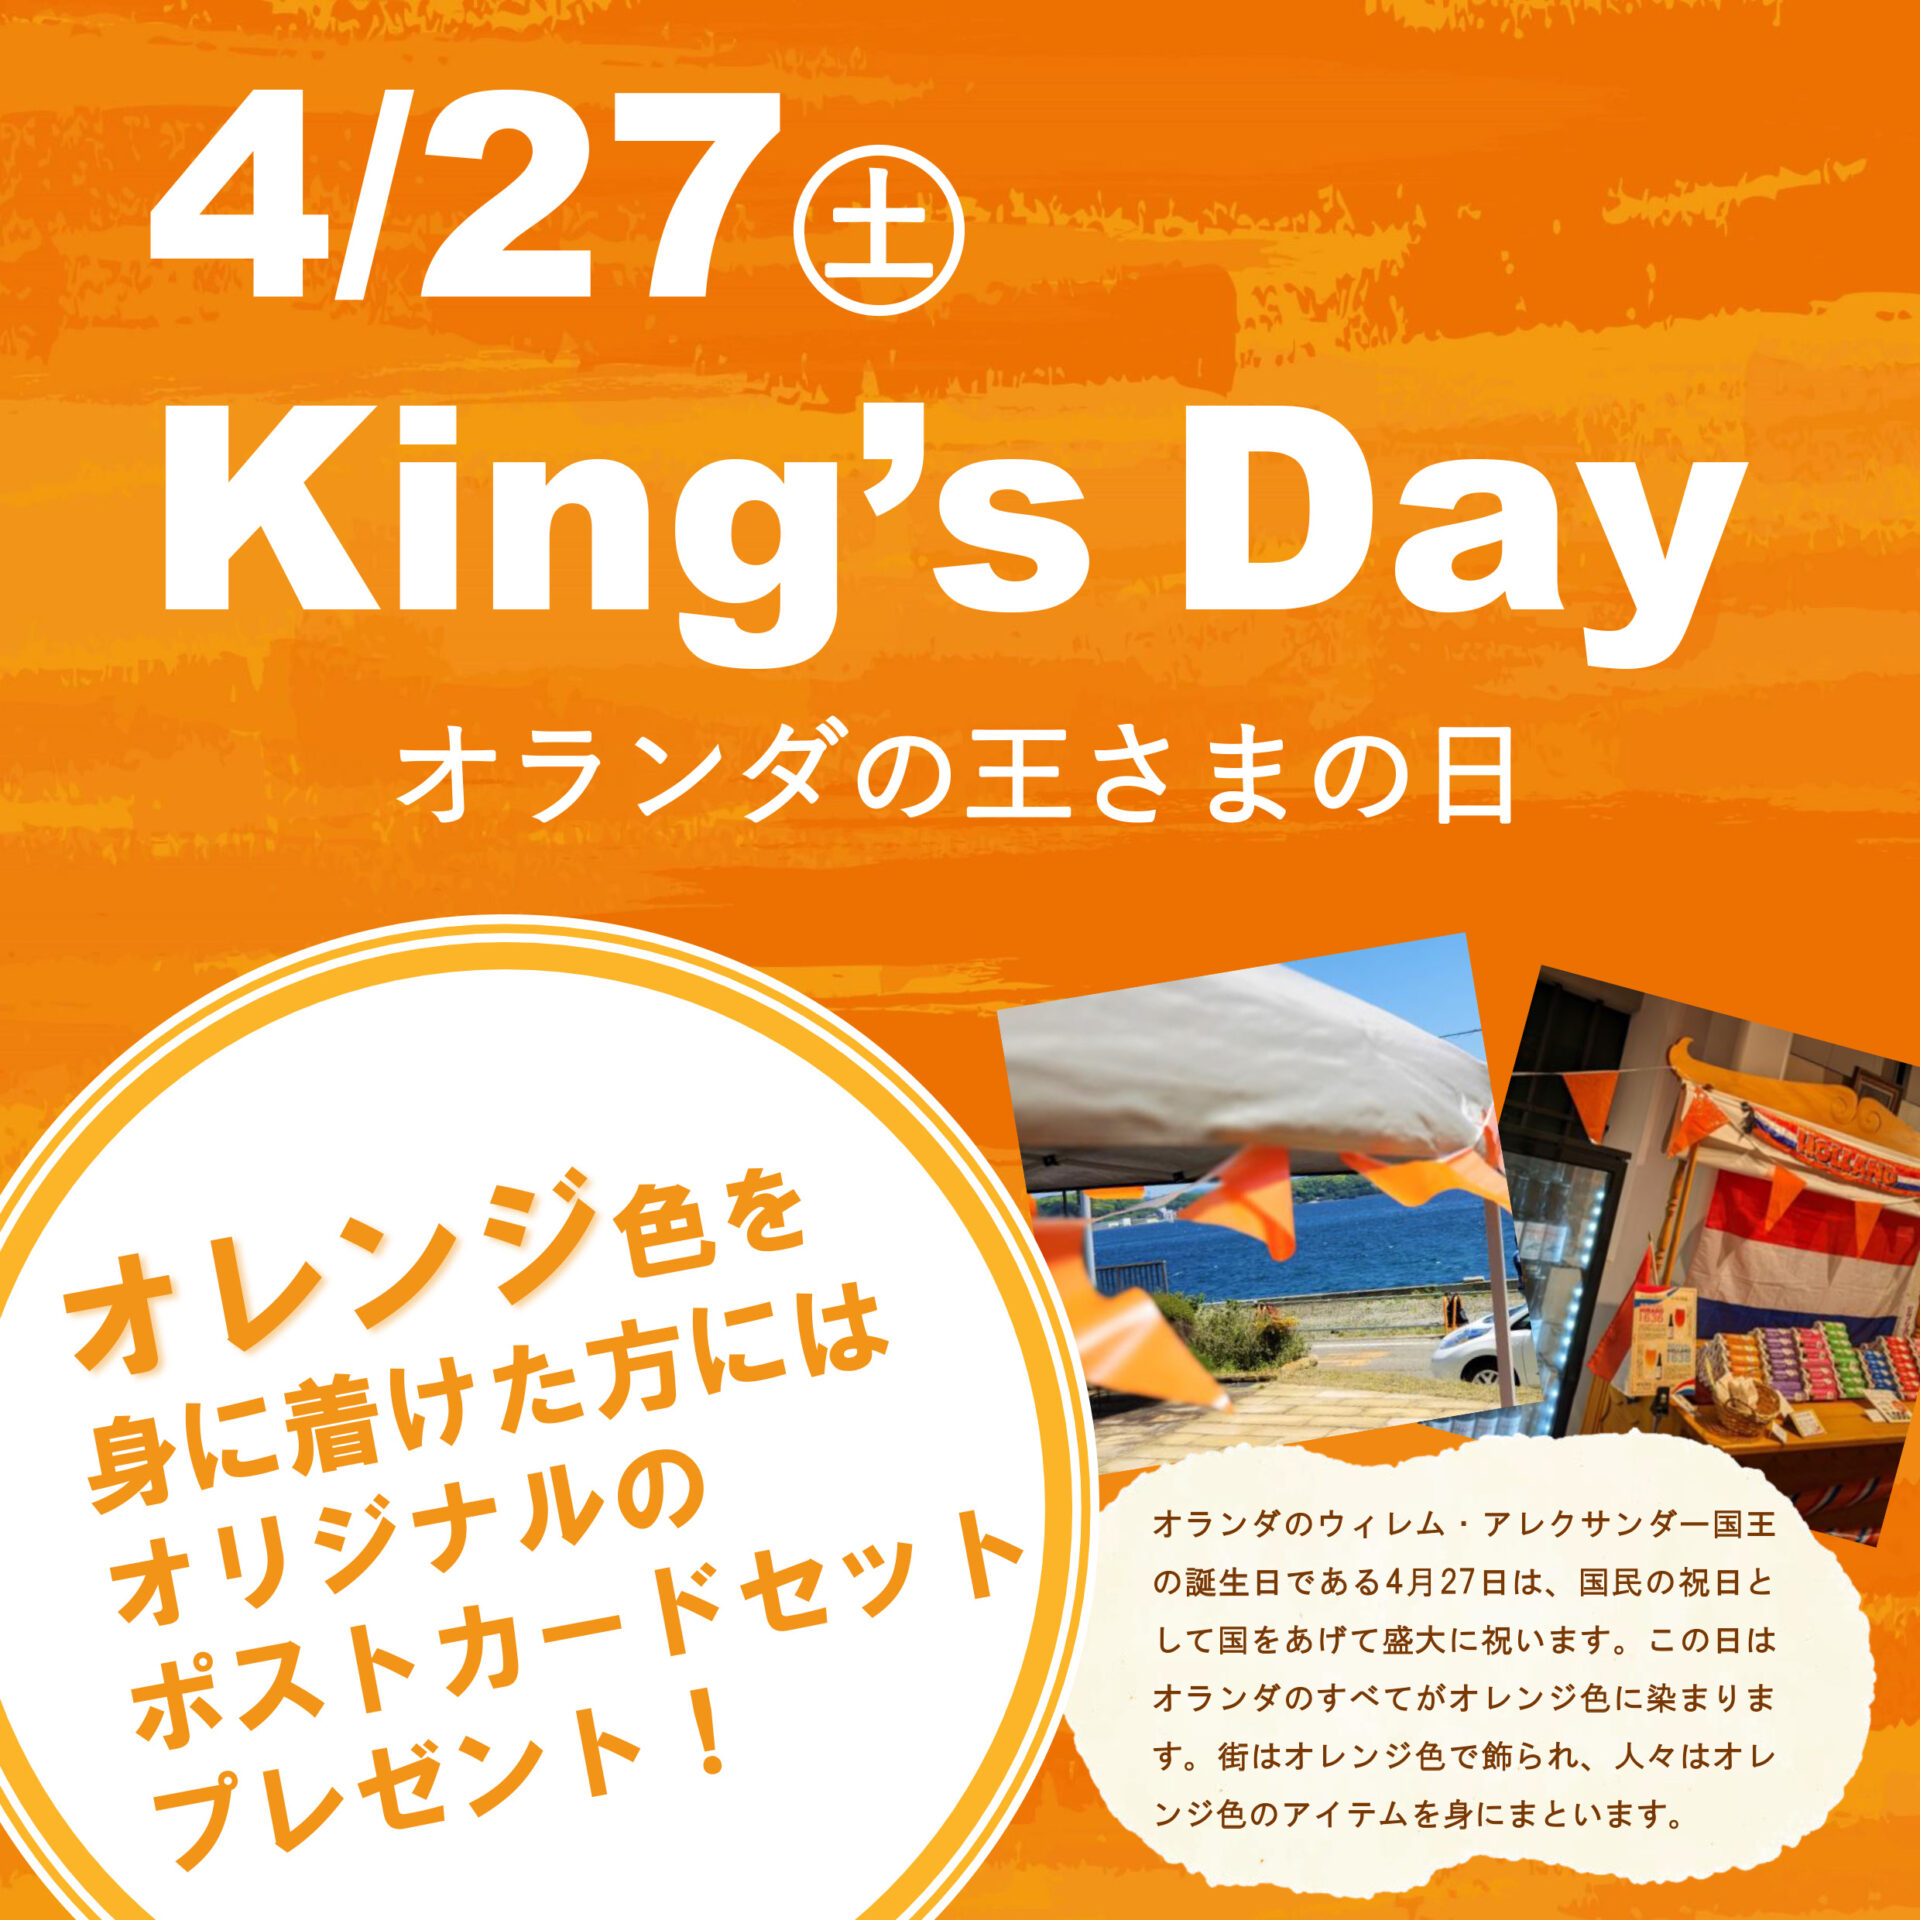 4/27 King’s Day オランダ王さまの日